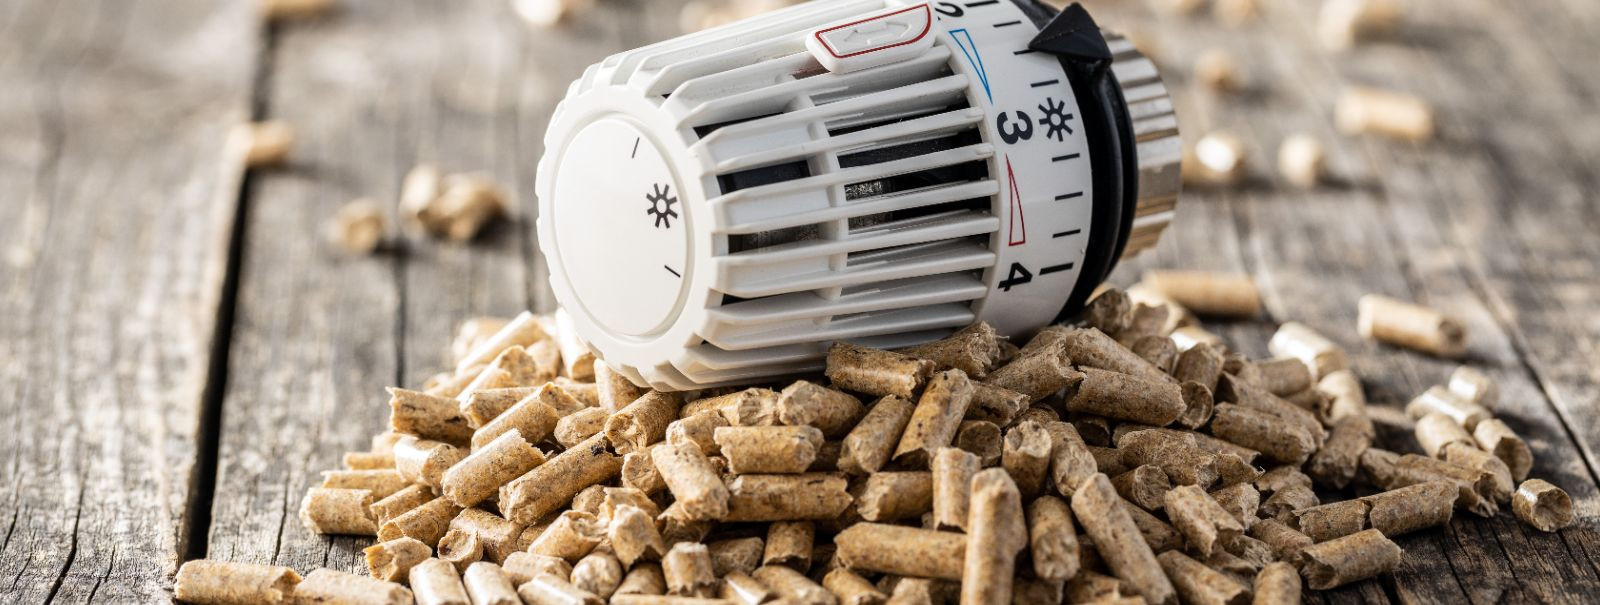 Pelletküte on keskkütte vorm, mis põletab kokkupressitud puidu või biomassi pelleteid, et tekitada soojust elamu- ja tööstusruumide jaoks. See küttesüsteemi tüü